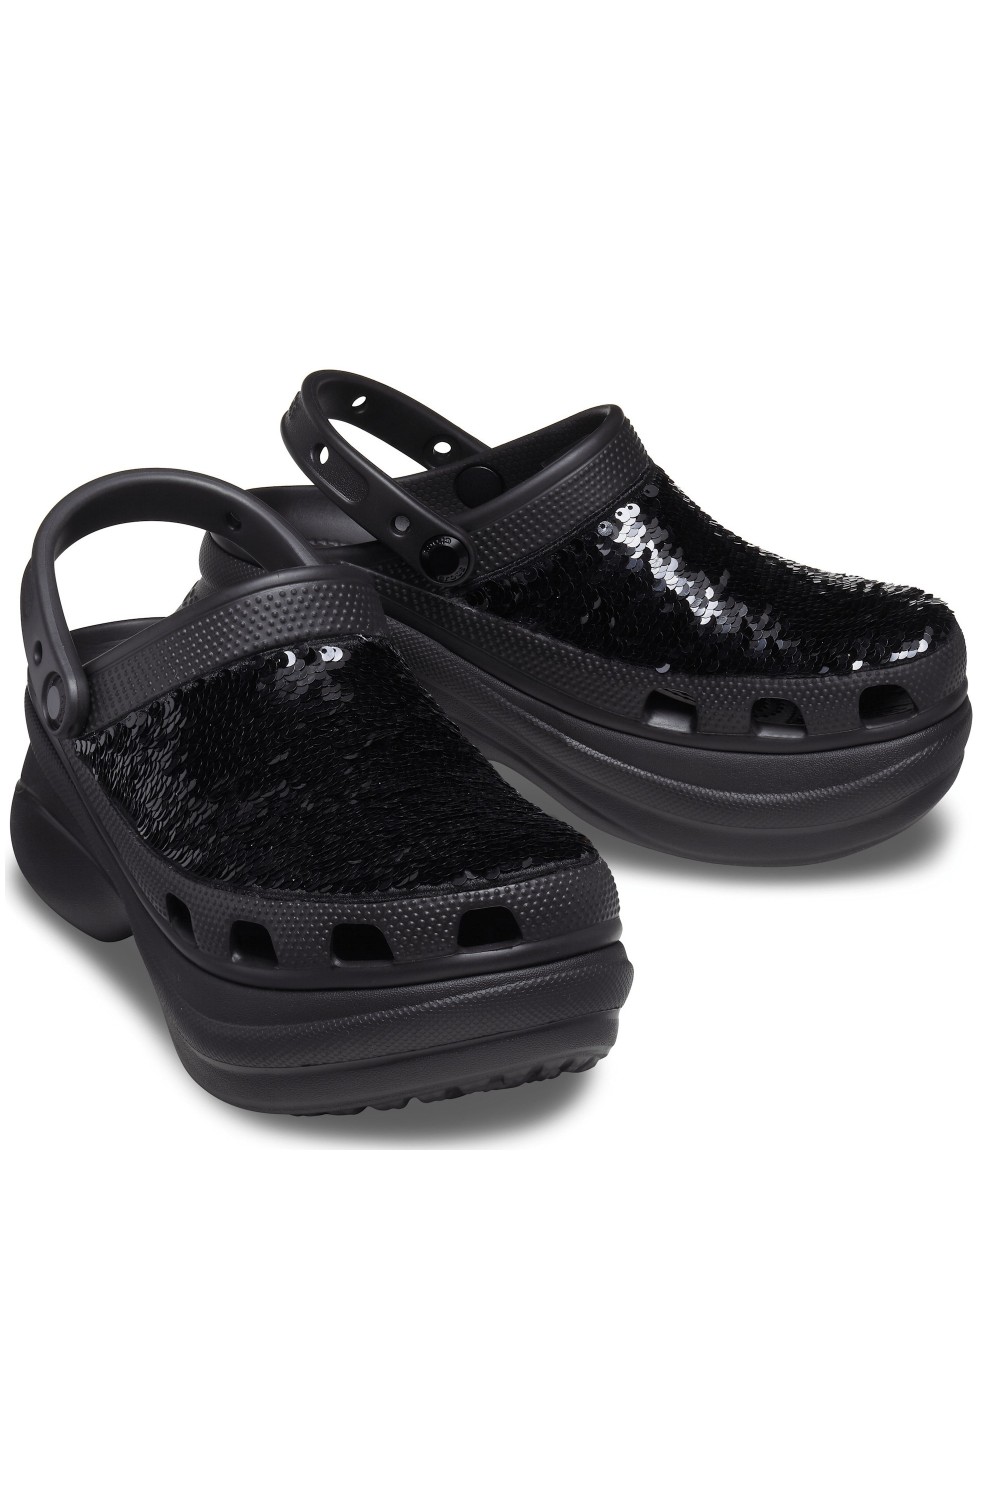 Crocs Classic Bae Clog Sequin Black